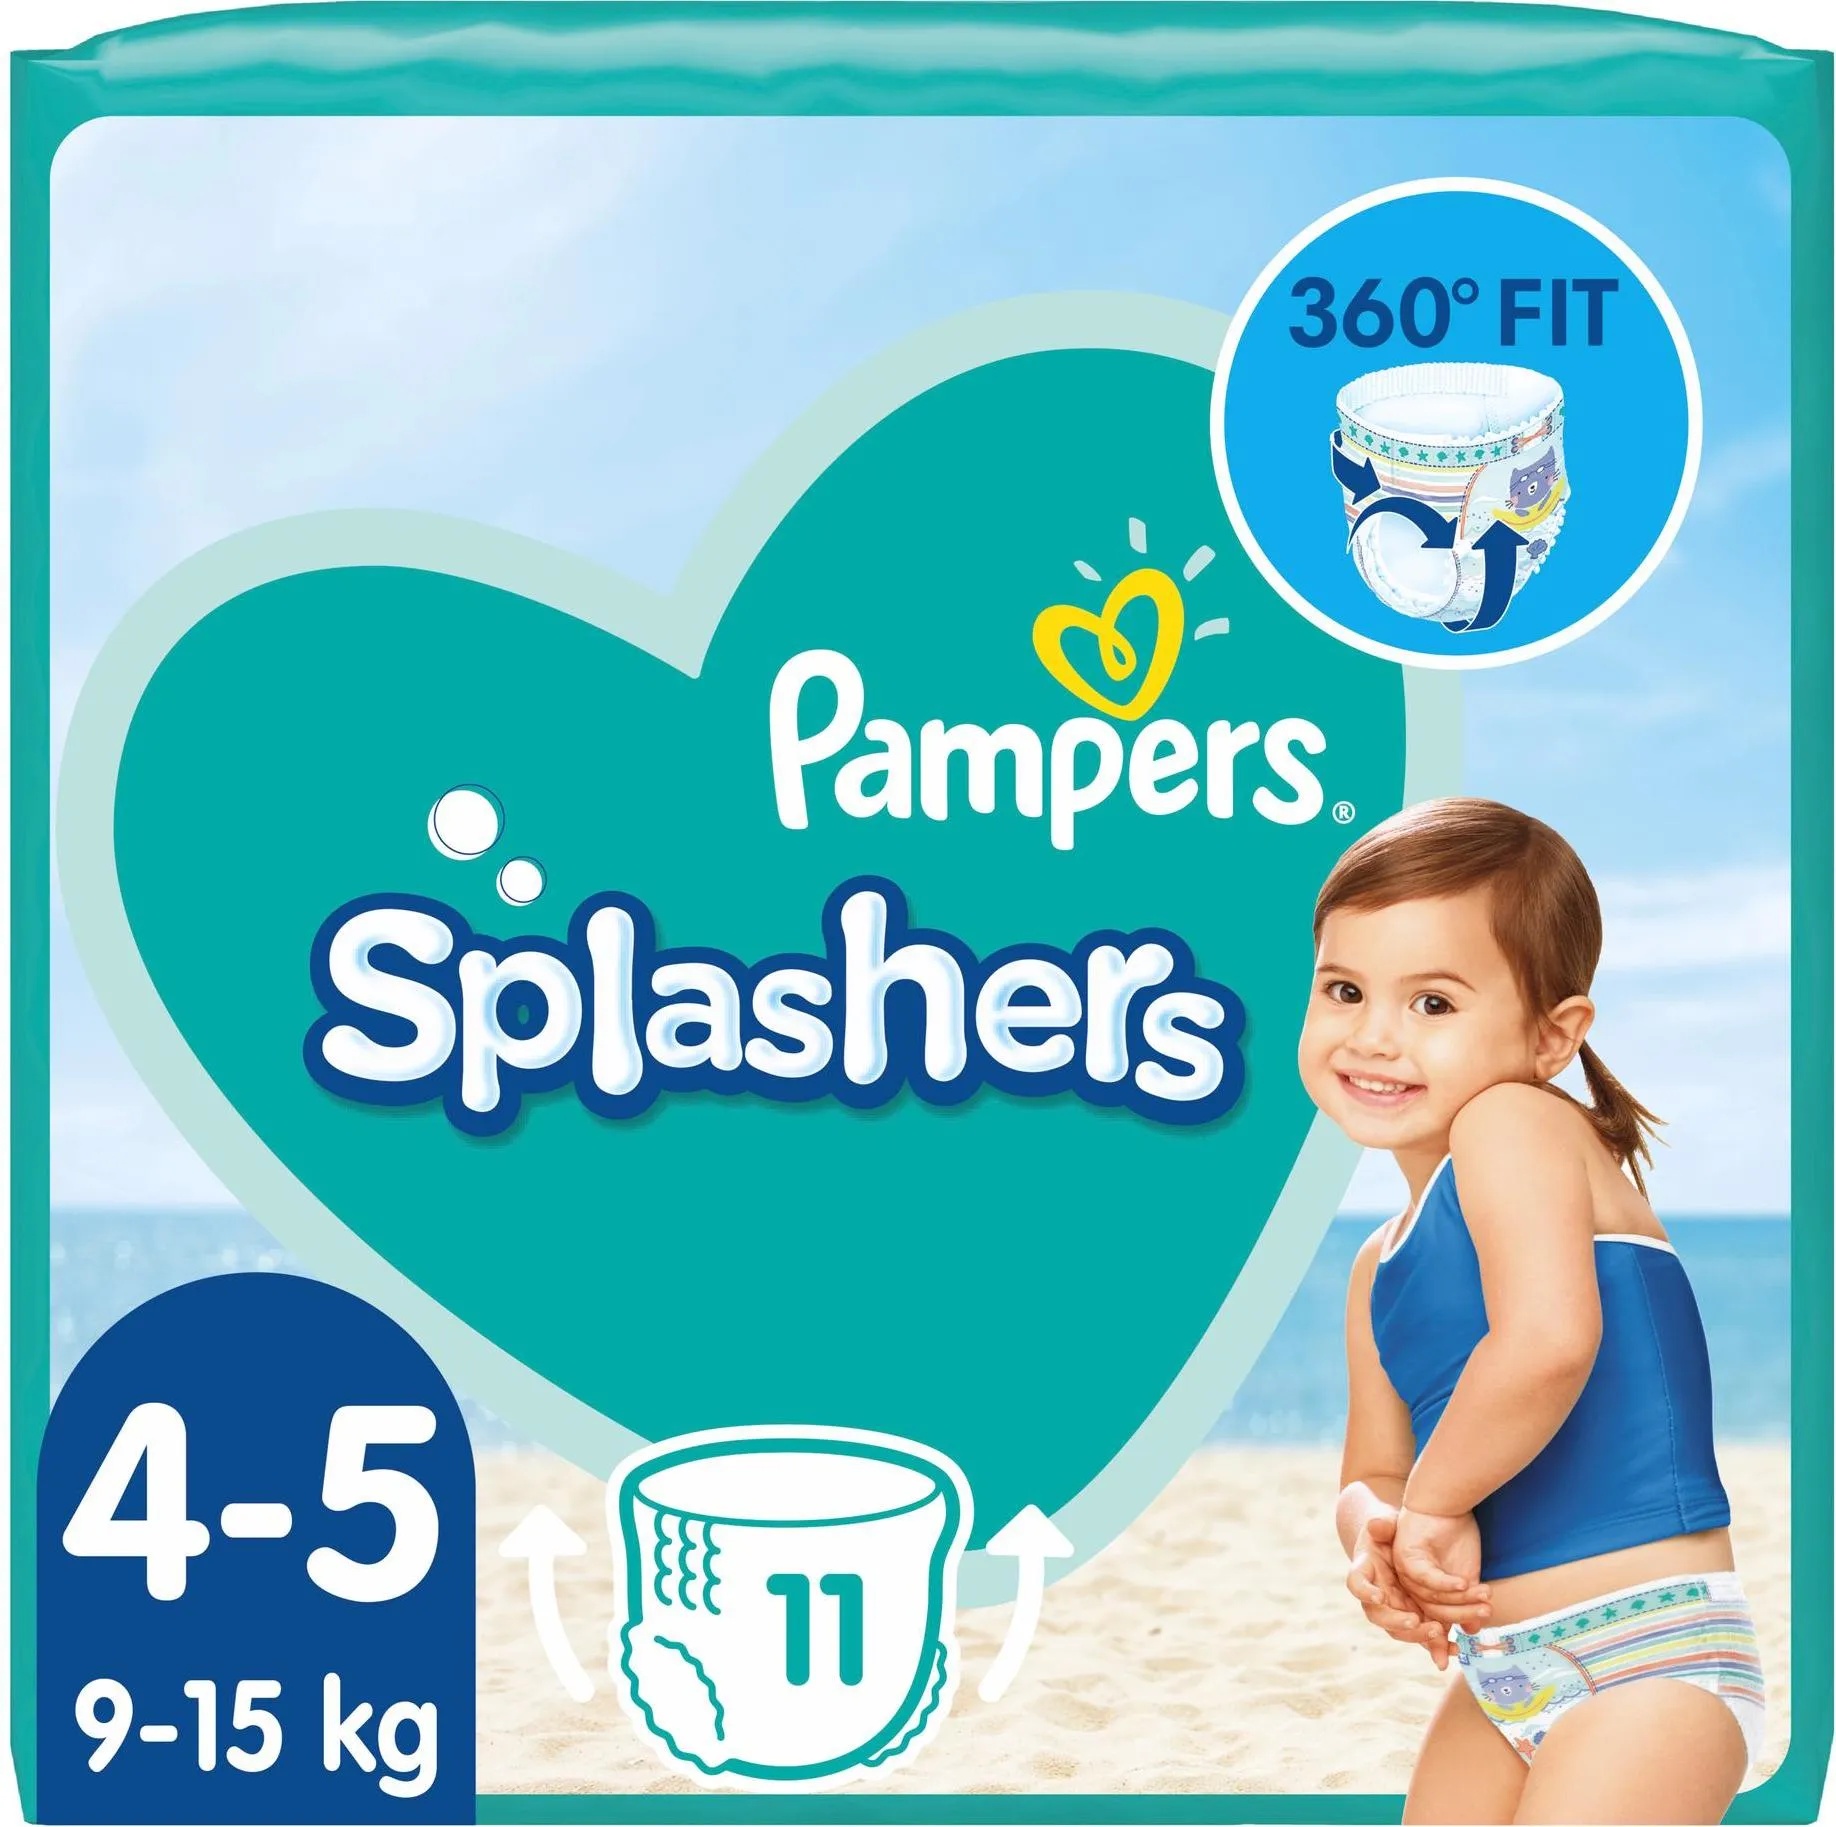 Pampers Splashers (Gr. 5, Gr. 4, 11 Stück, Tragepack)